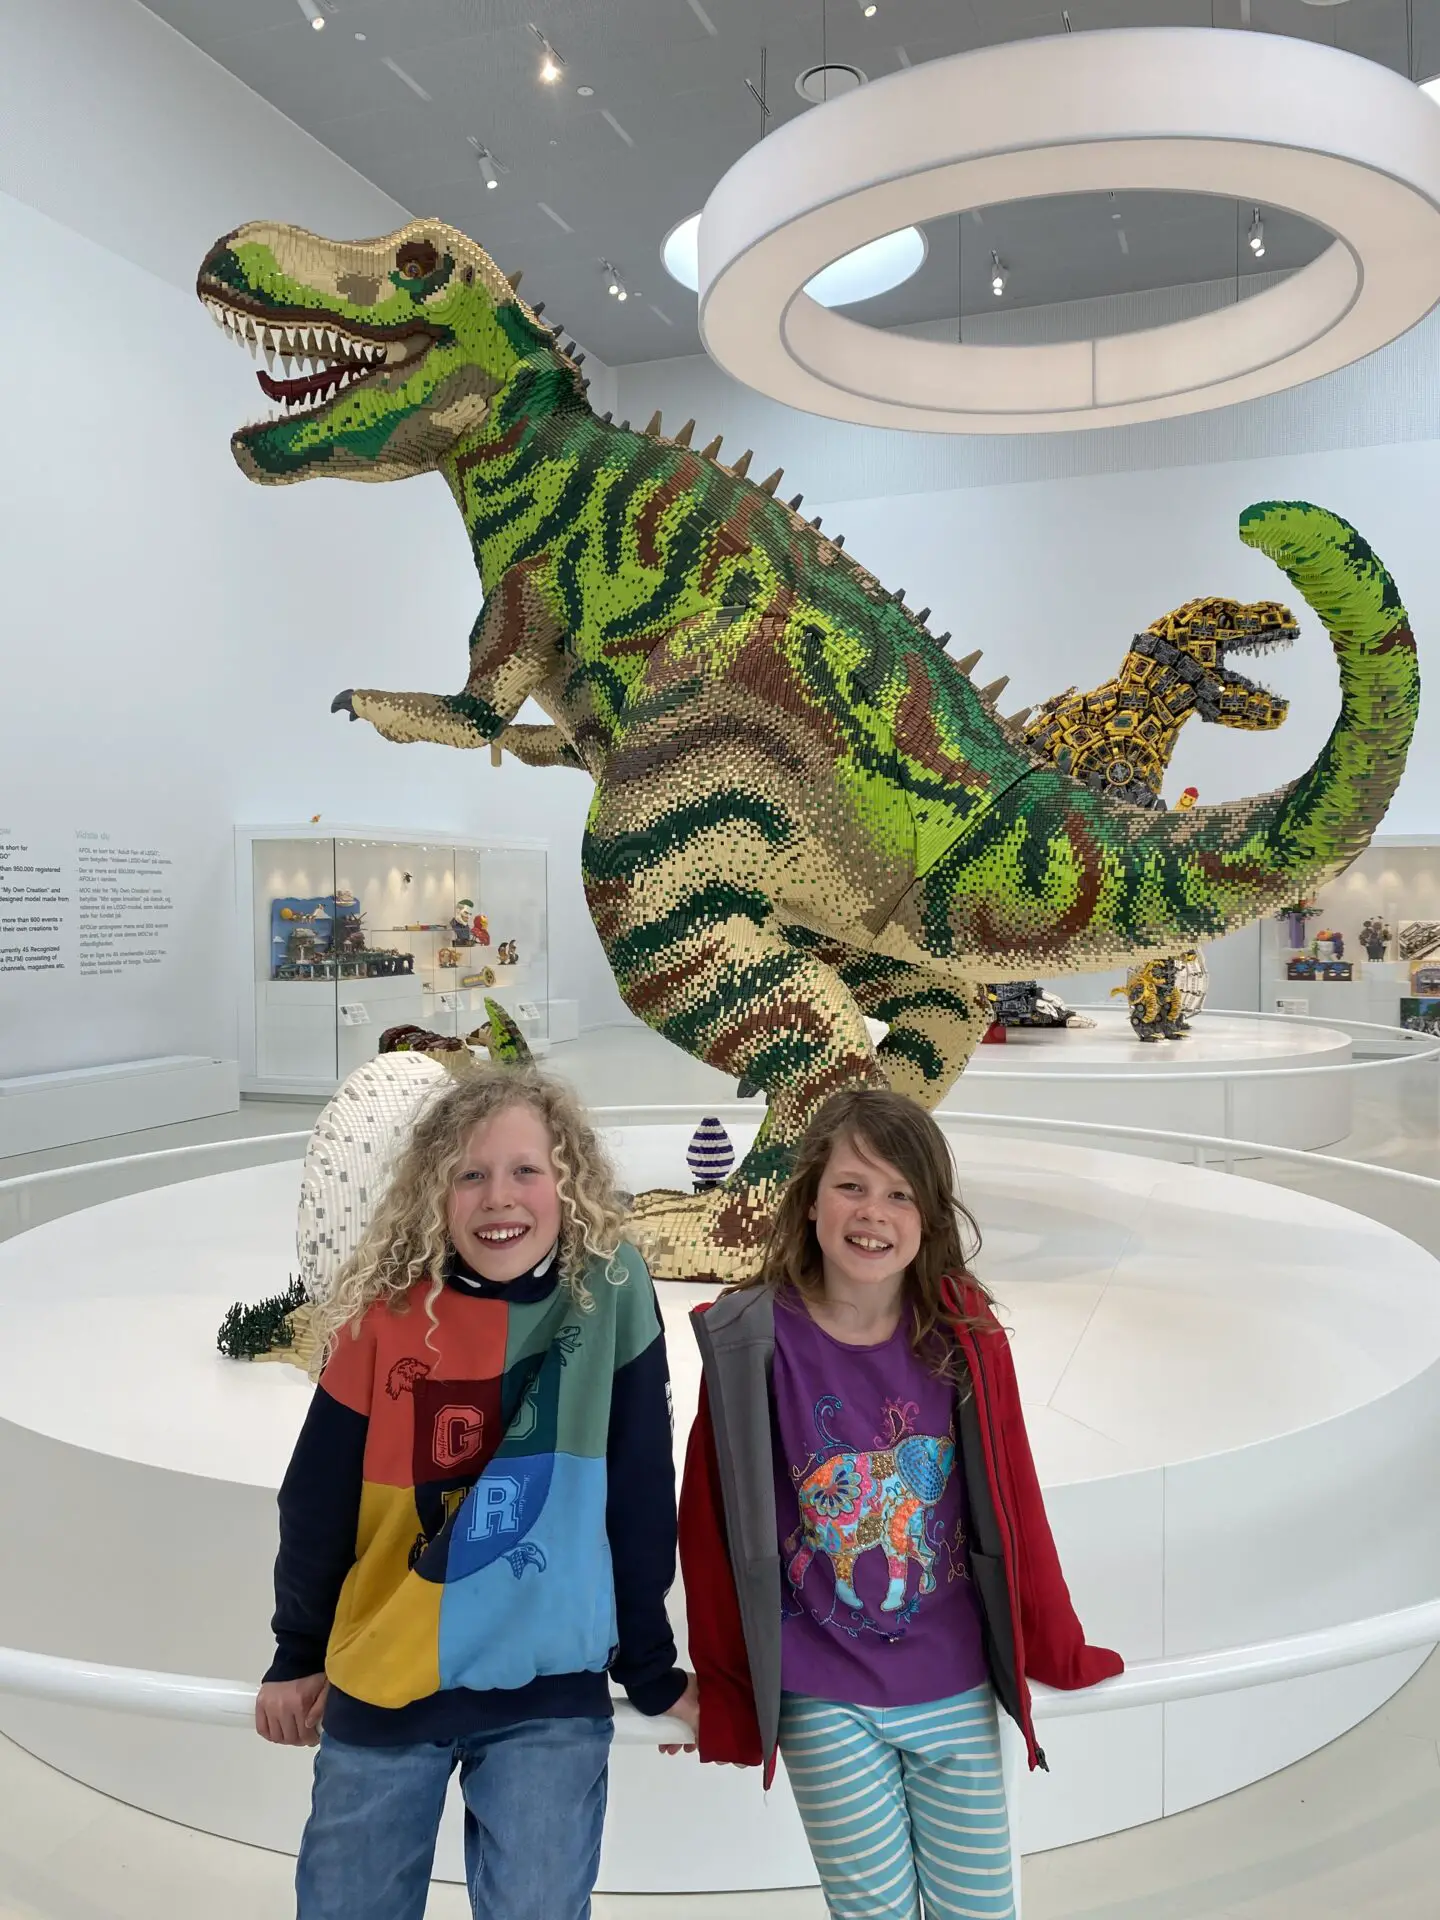 Children standing beside a giant Lego dinosaur